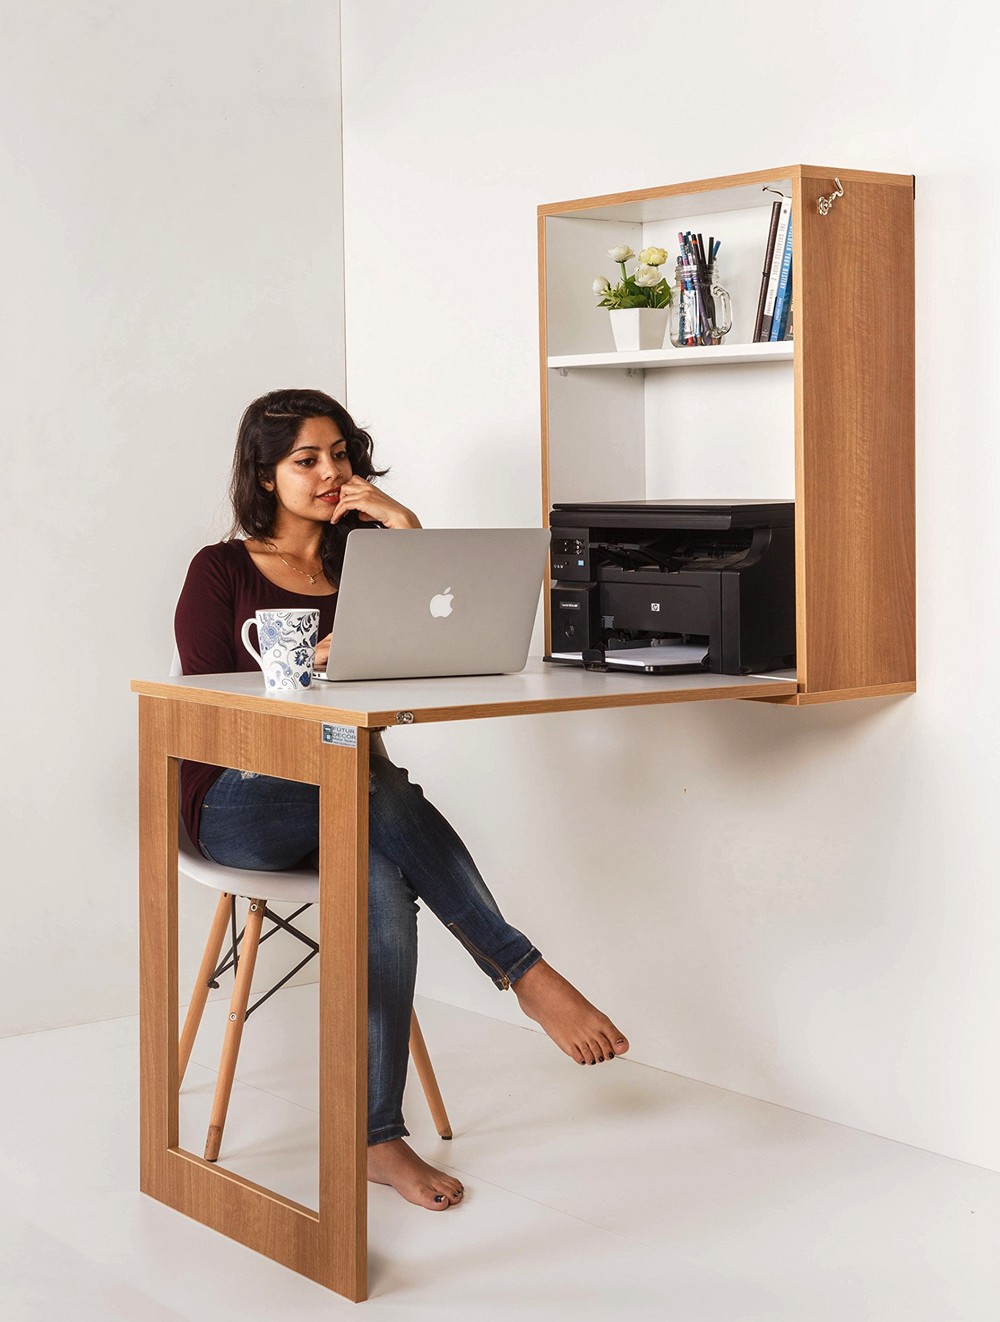 Складной настенный стол используется как рабочее место, за которым можно расположиться с ноутбуком